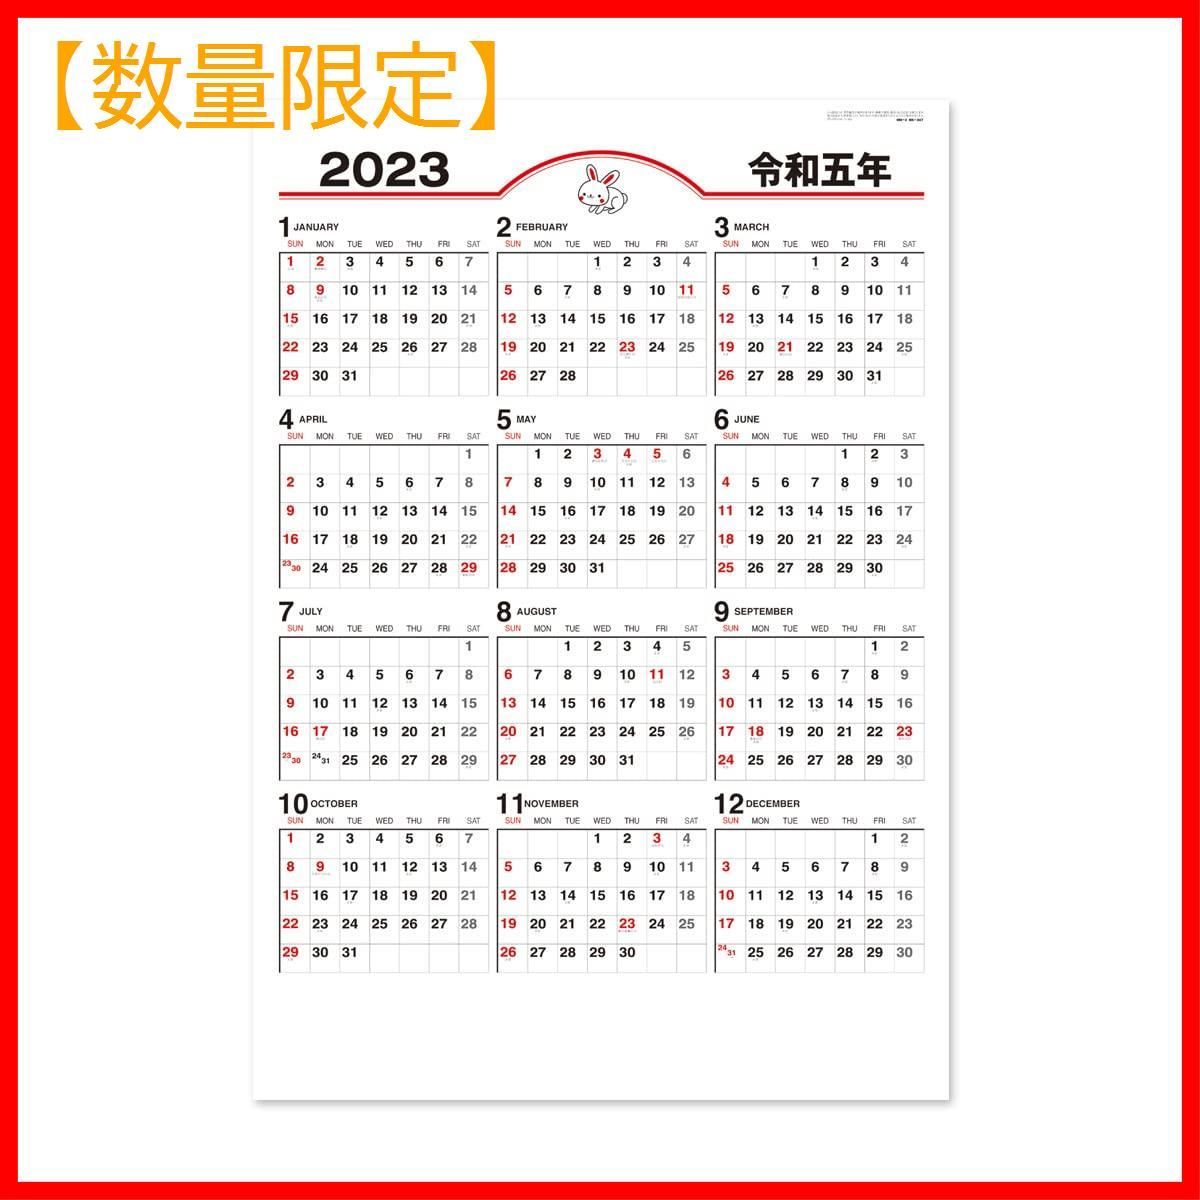 【数量限定】NK347 年表文字 壁掛け カレンダー 2023年 新日本カレンダ-0